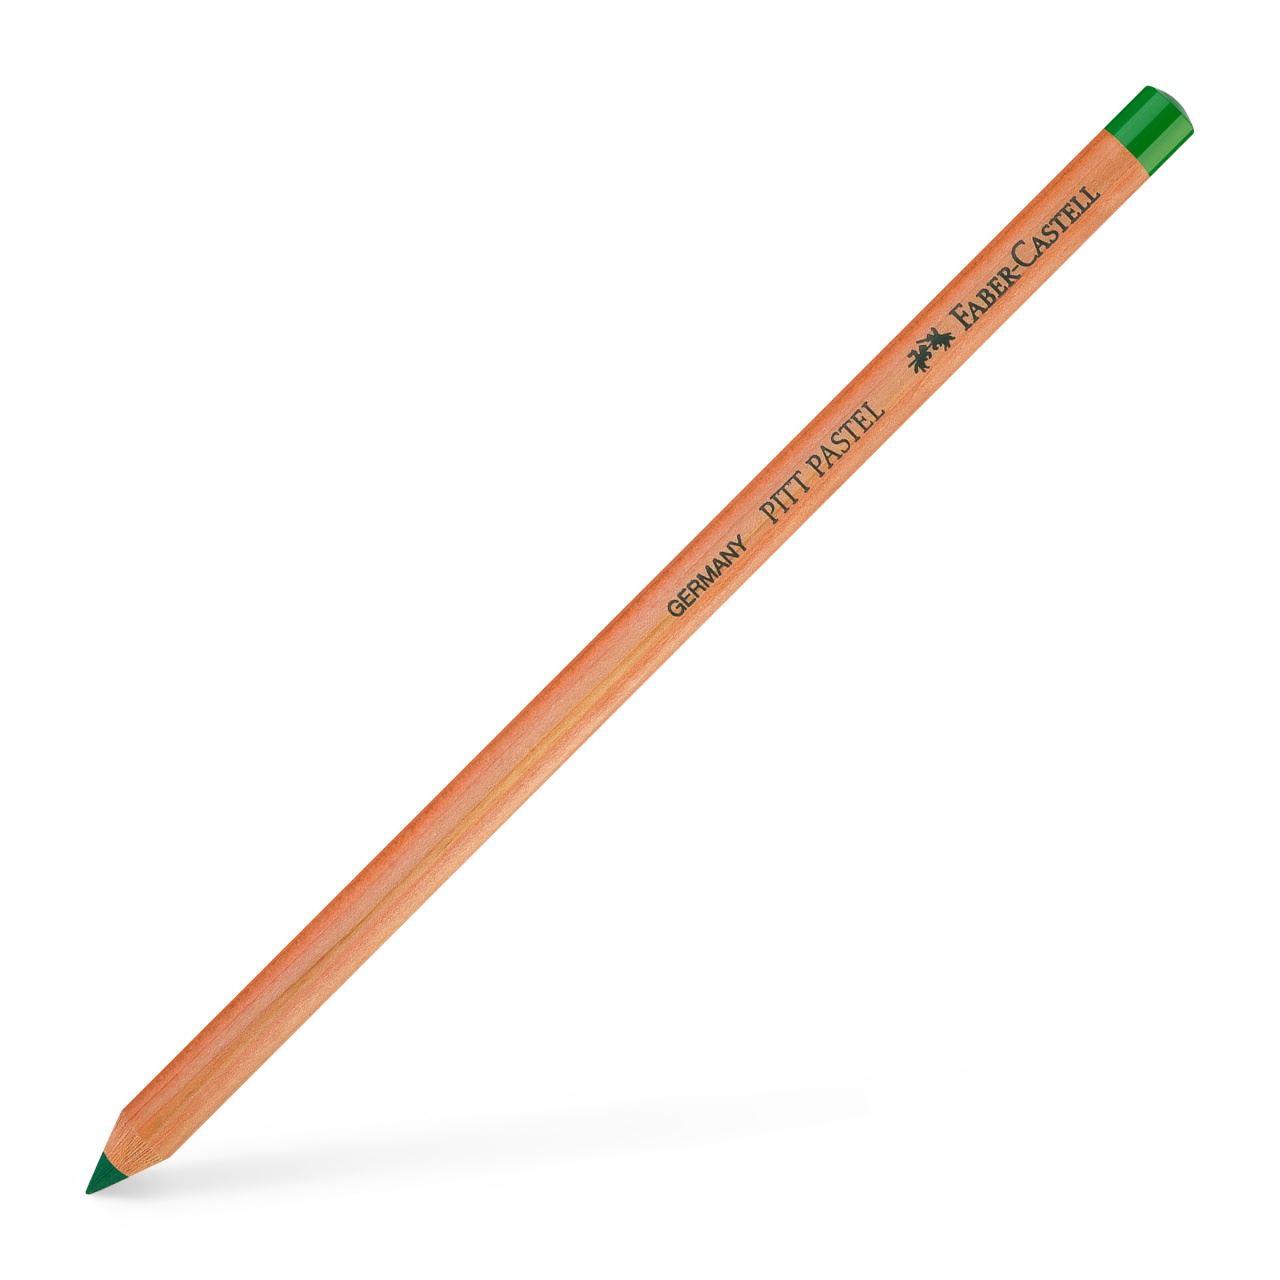 Faber-Castell - Pitt Pastel pencil, pine green